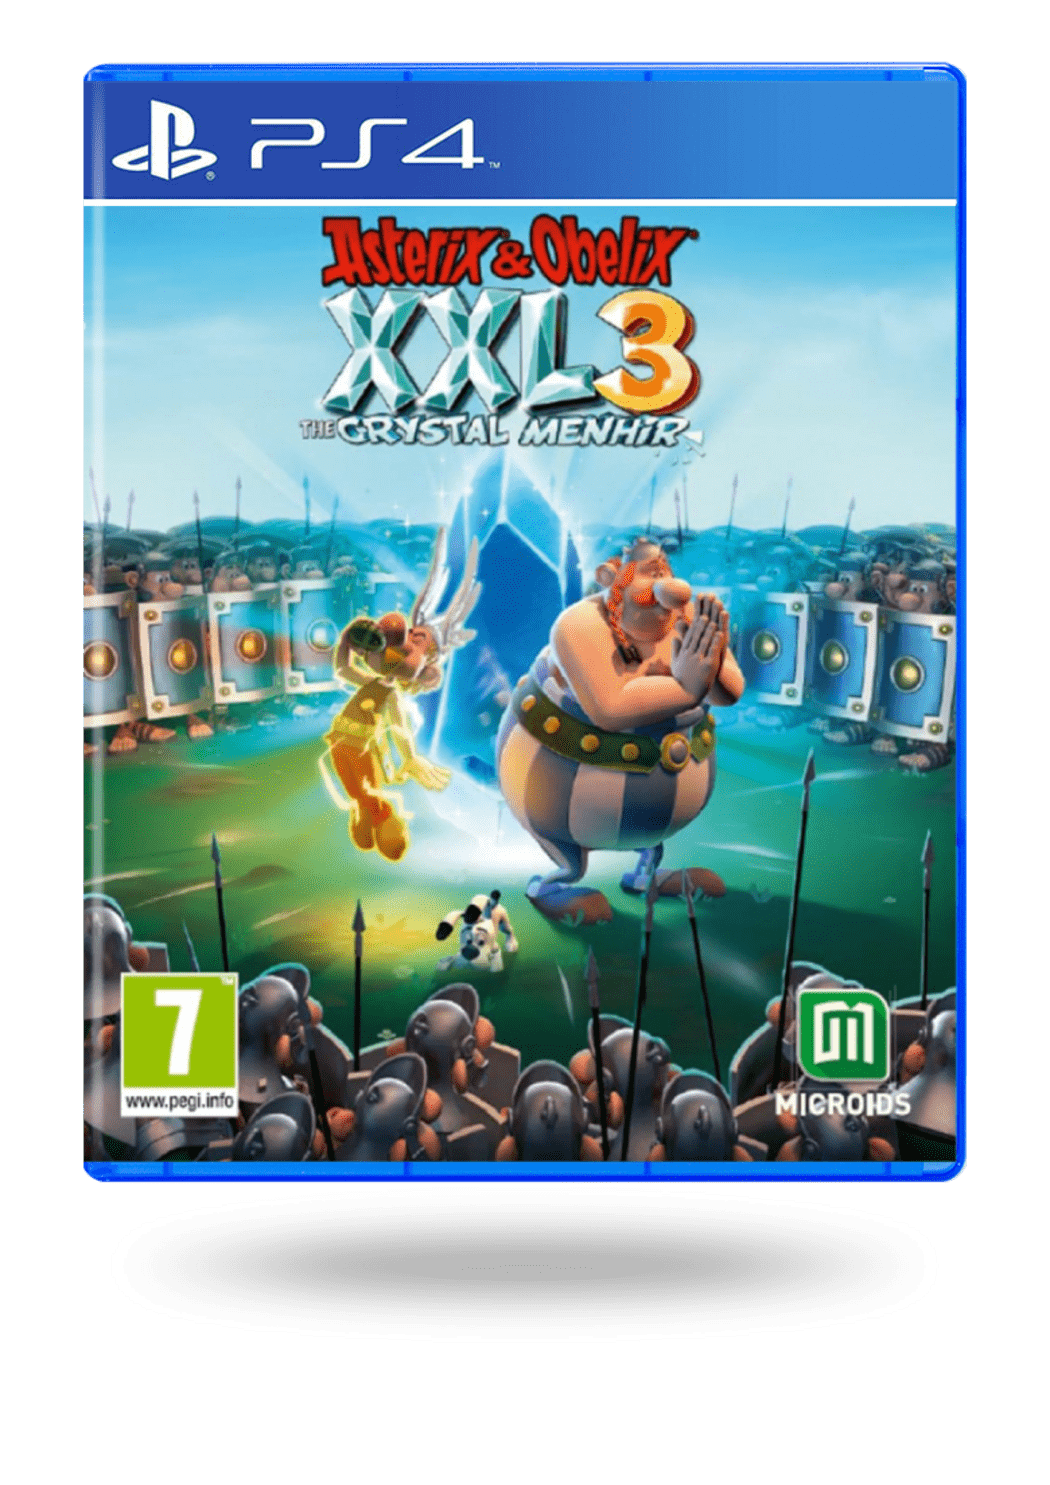 Comprar Asterix Obelix XXL 3 - The Crystal Menhir __GAME_PLATFORM__ segunda mano de PlayStation 4 al Mejor Precio | ENEBA